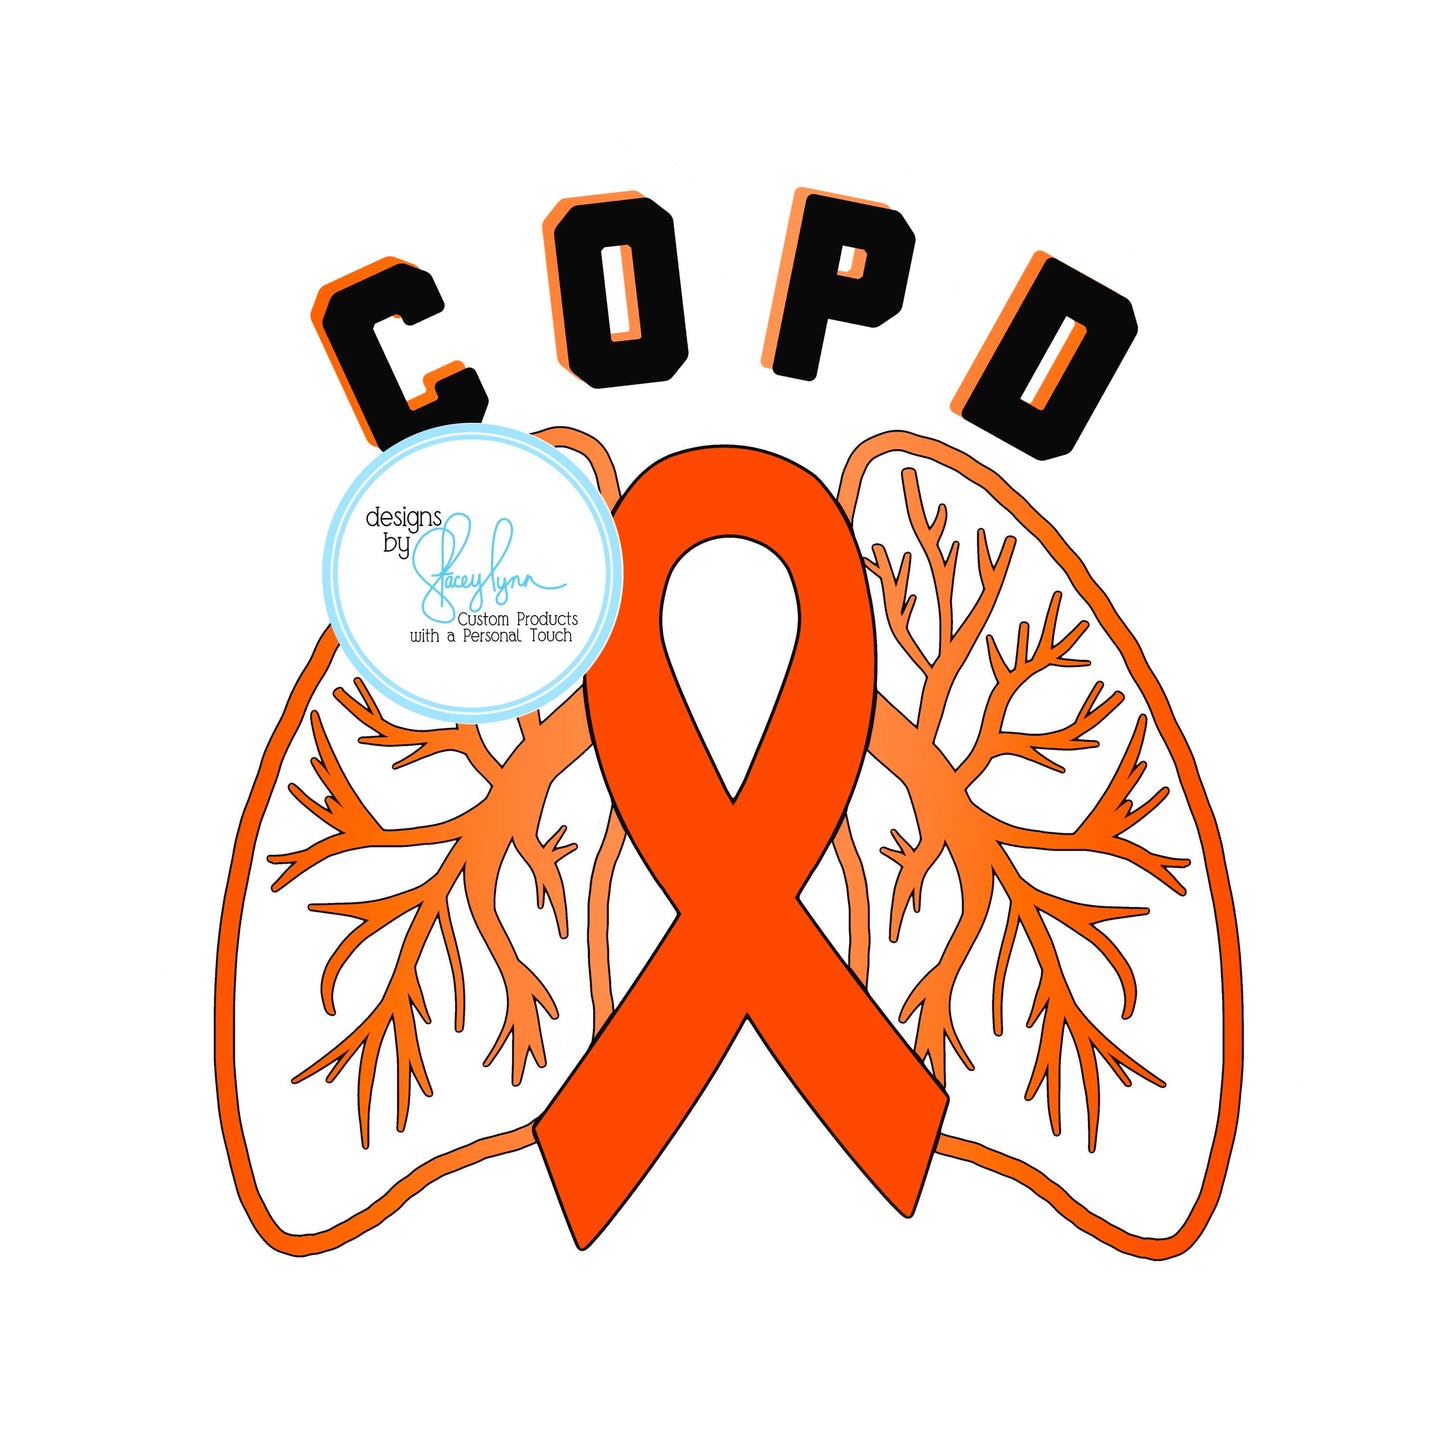 COPD Vinyl Waterproof Sticker